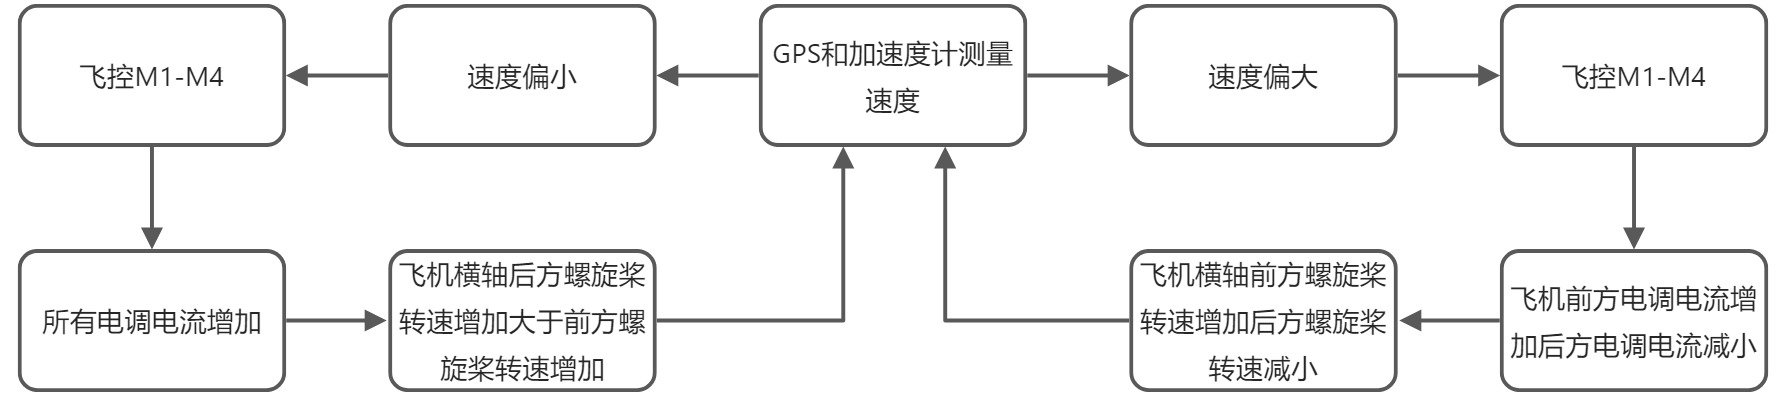 yuque_diagram(5).jpg